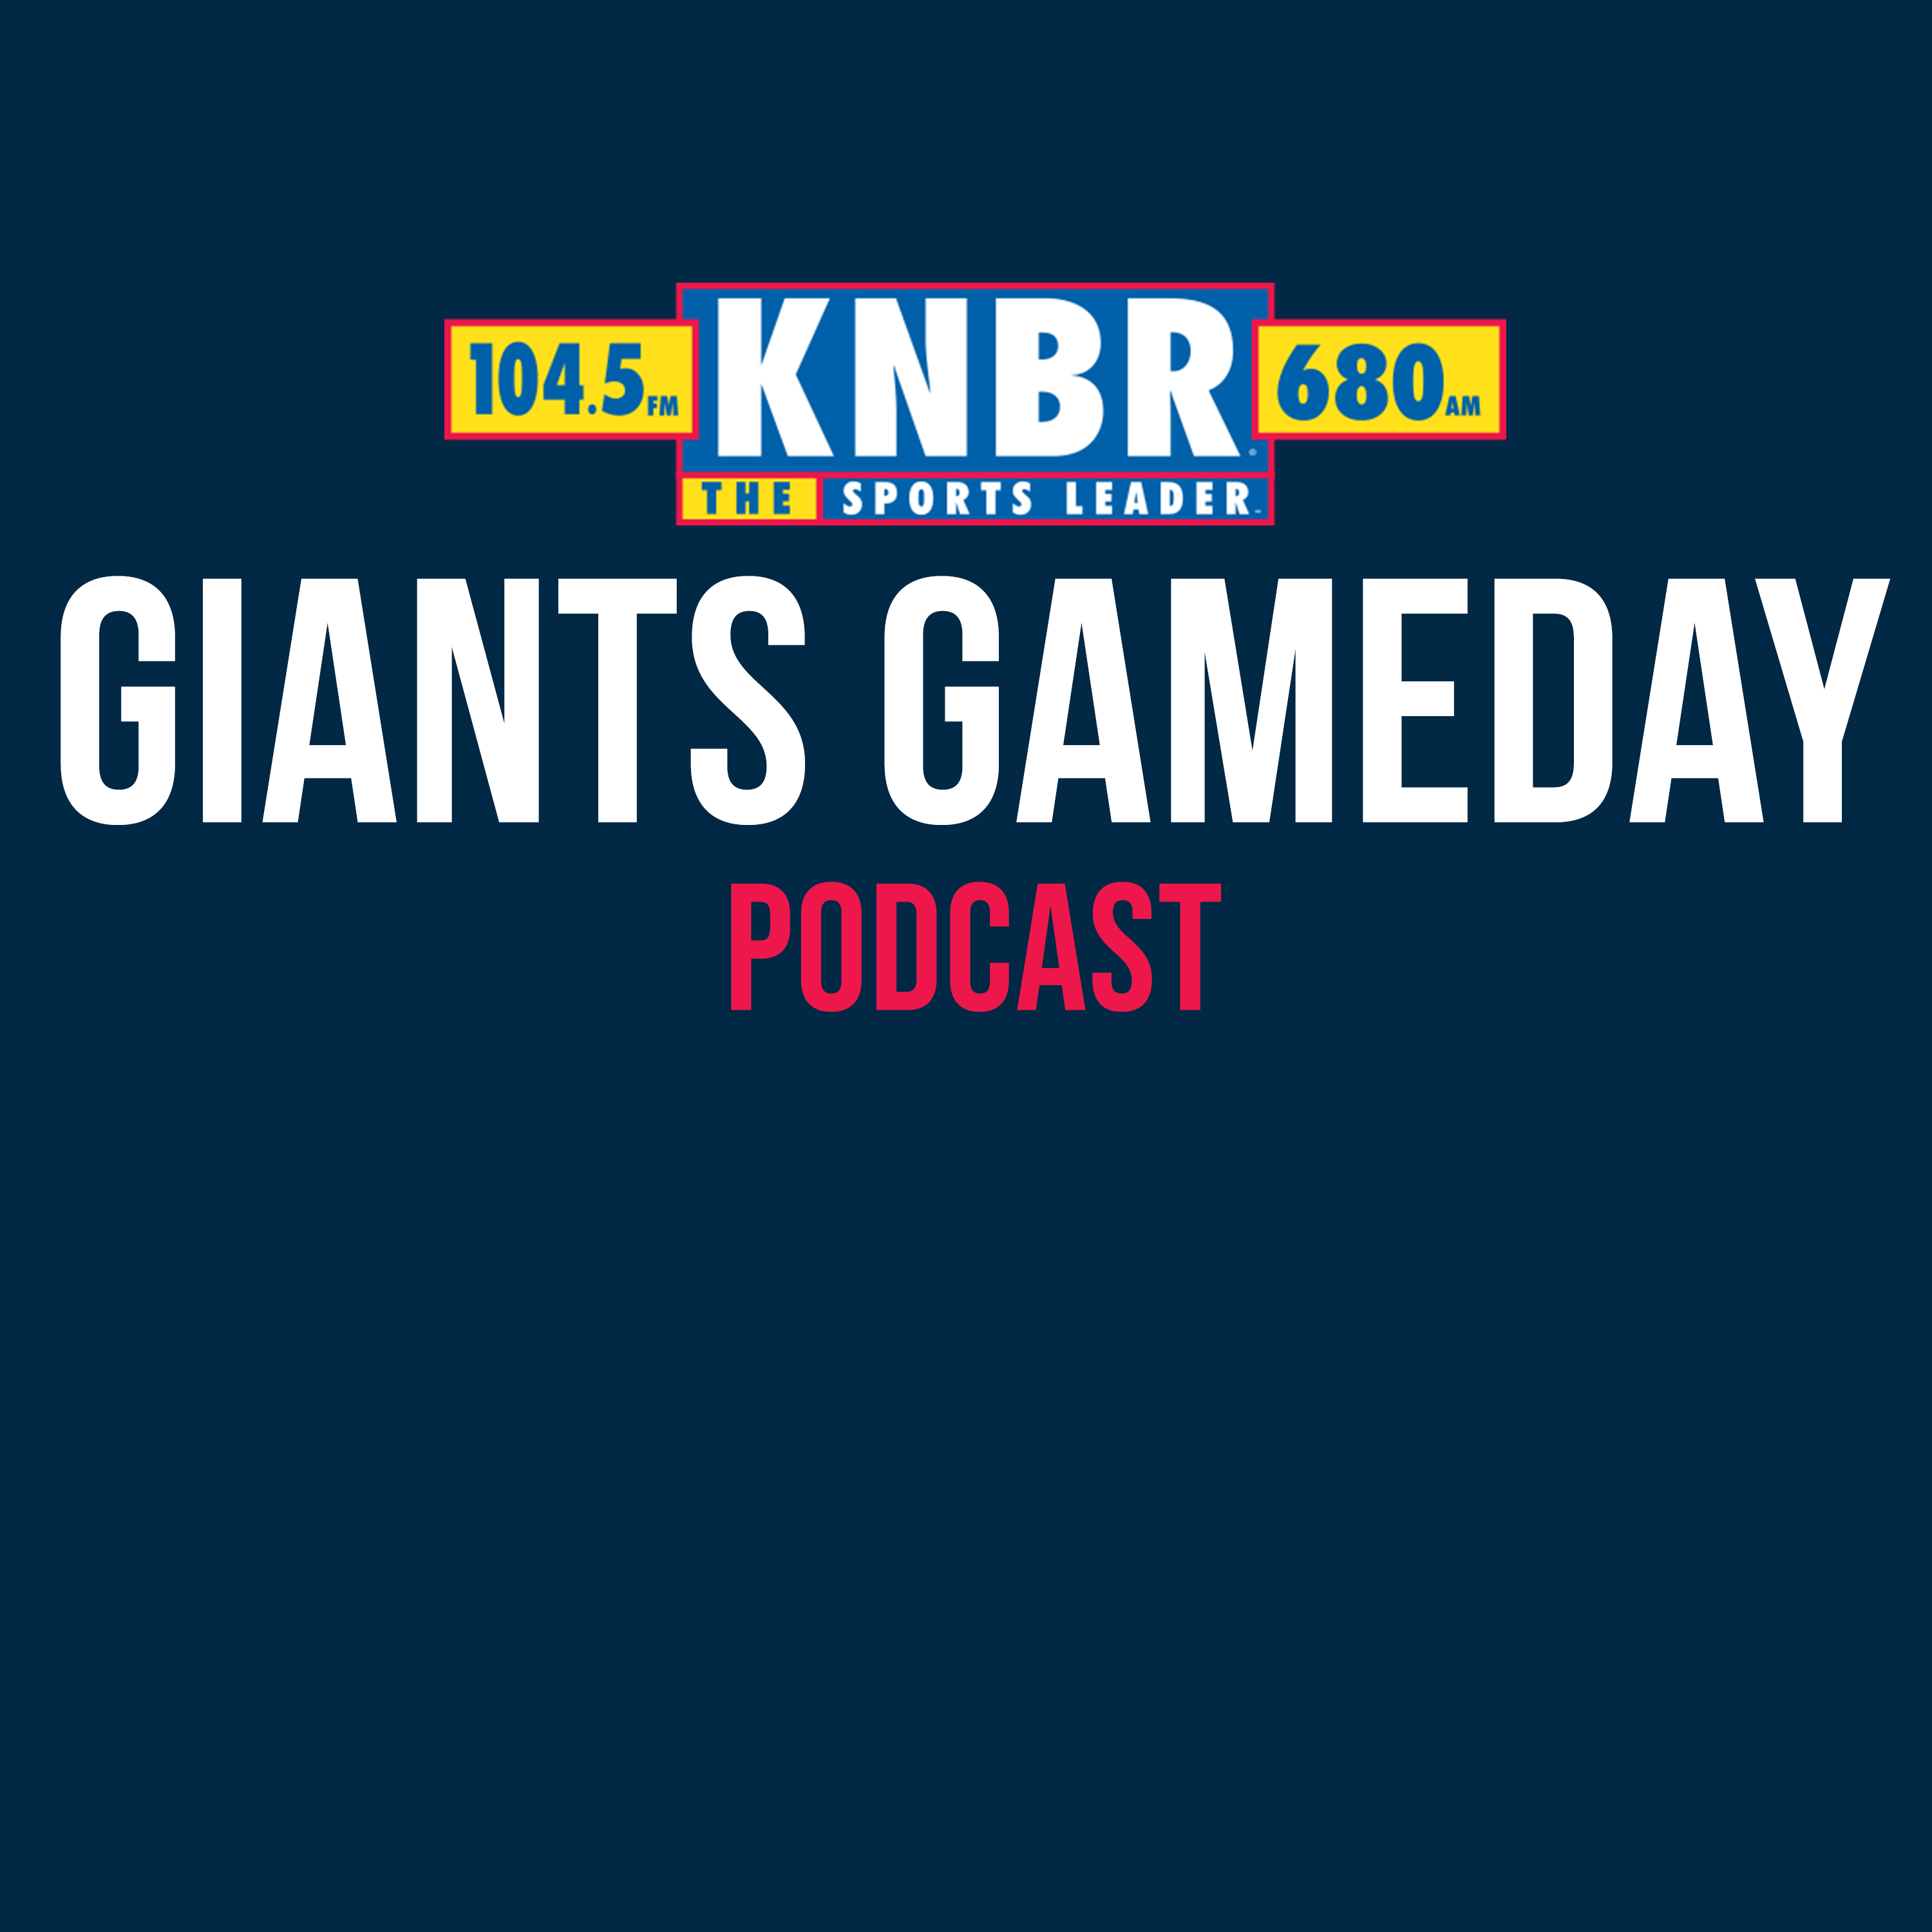 7-3 Postgame Highlights: Giants 6, Dbacks 5